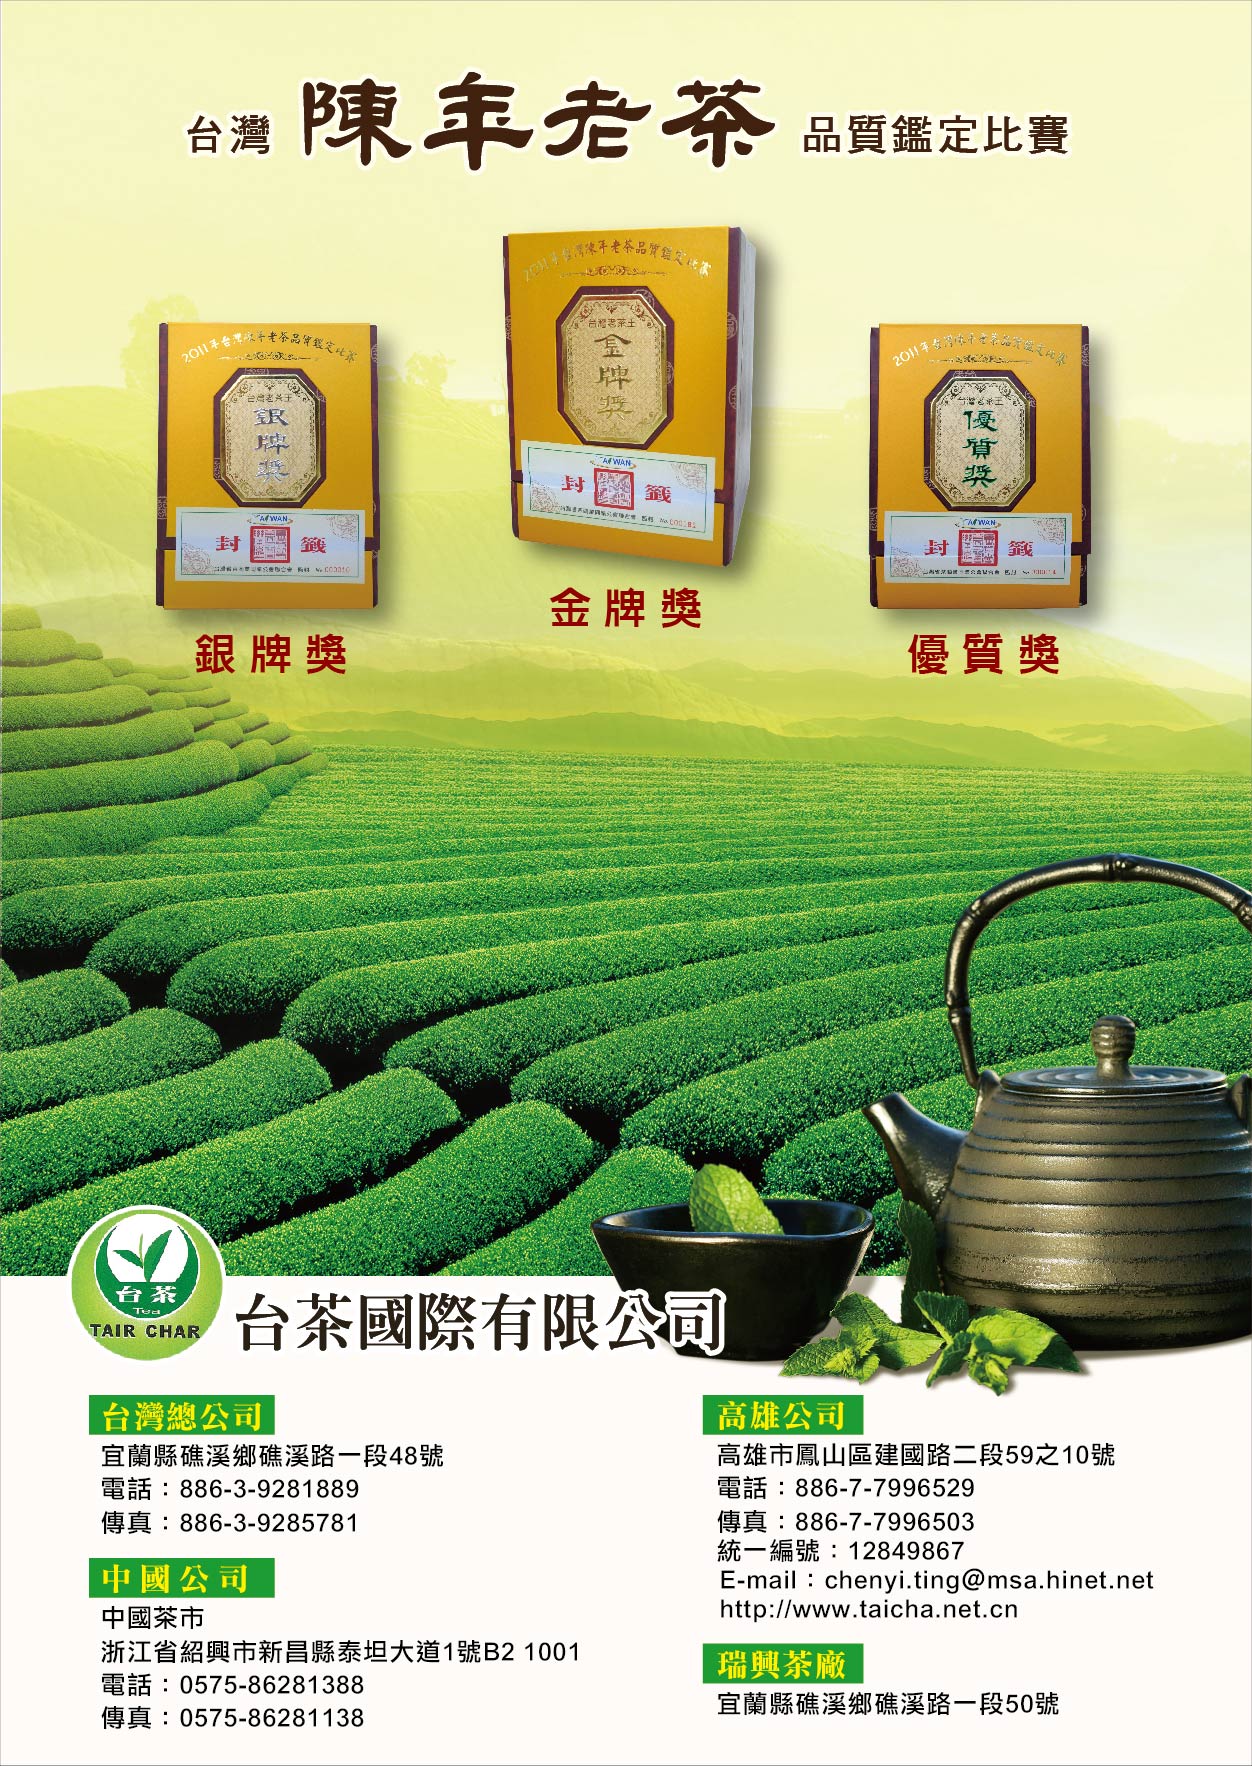 陳年老茶，榮獲2011年台灣陳年老茶品質鑑定競賽，金牌獎、銀牌獎、優質獎